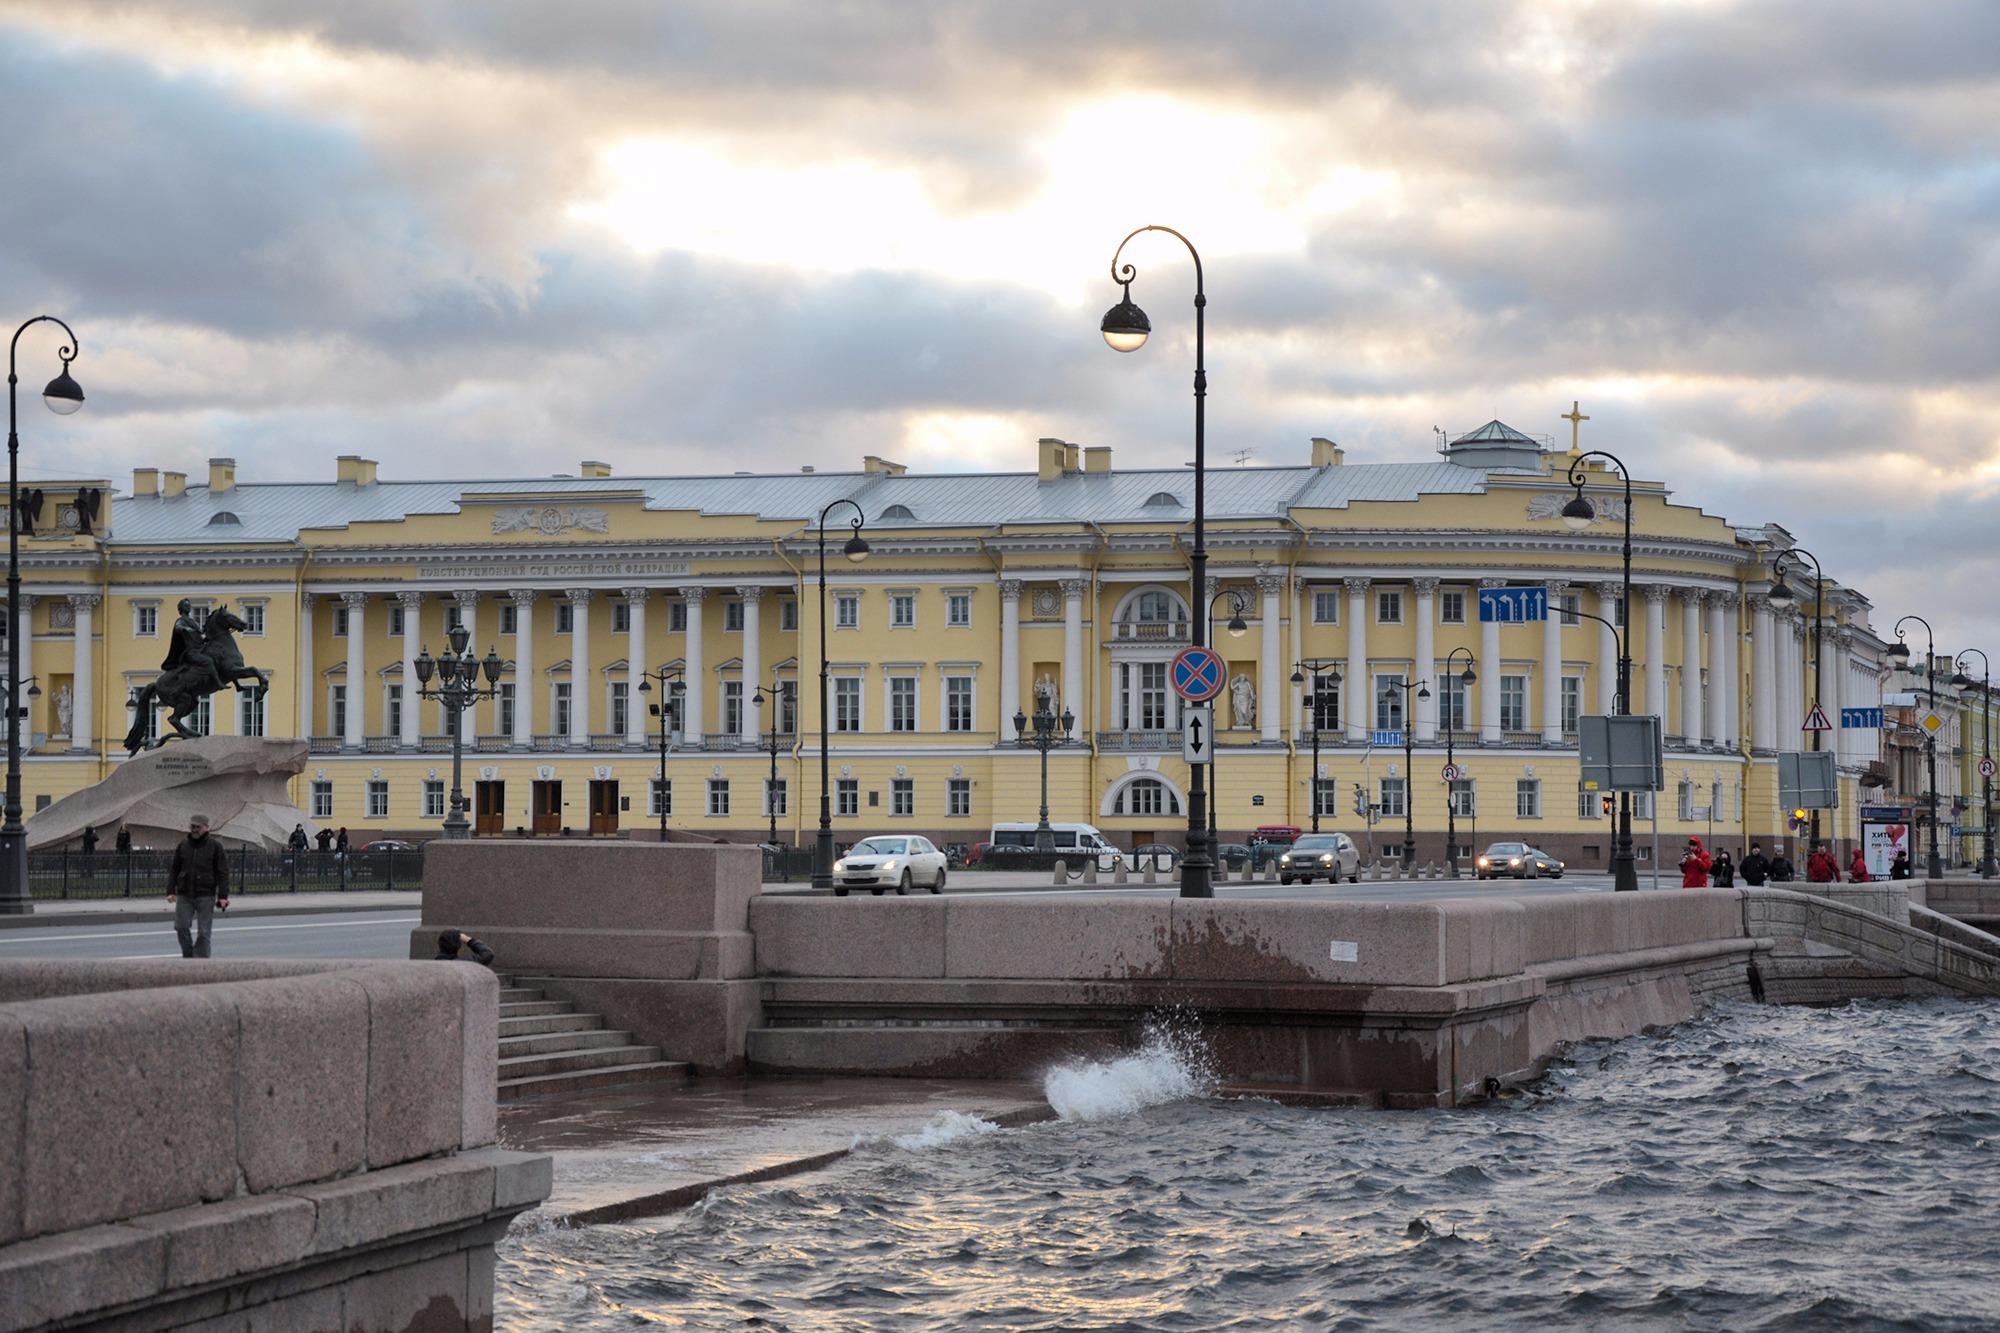 Здание Синода - бесплатные экскурсии в Санкт-Петербурге